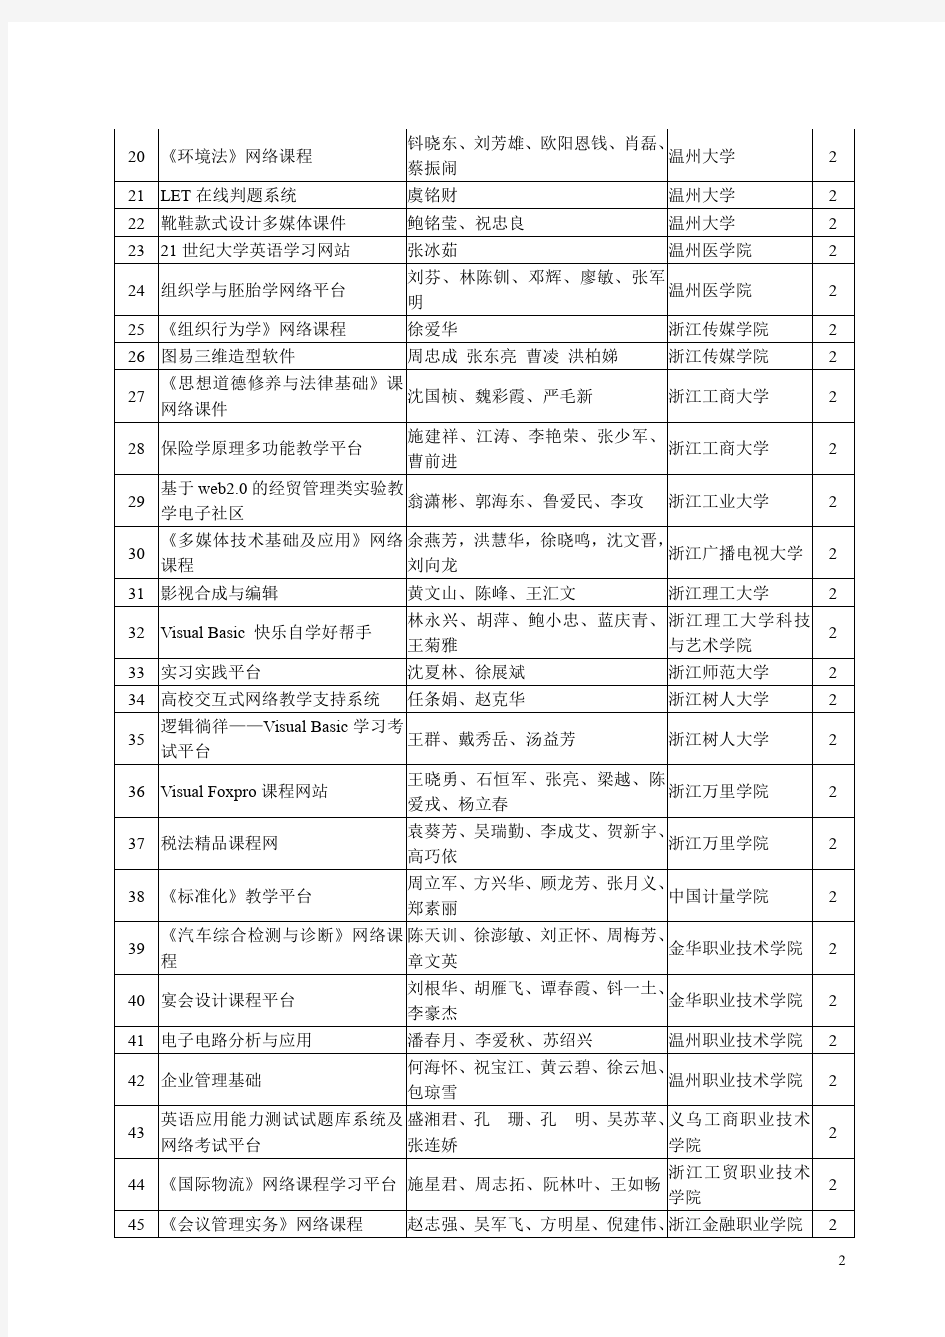 2010年浙江省高校教师多媒体教育软件评比获奖名单